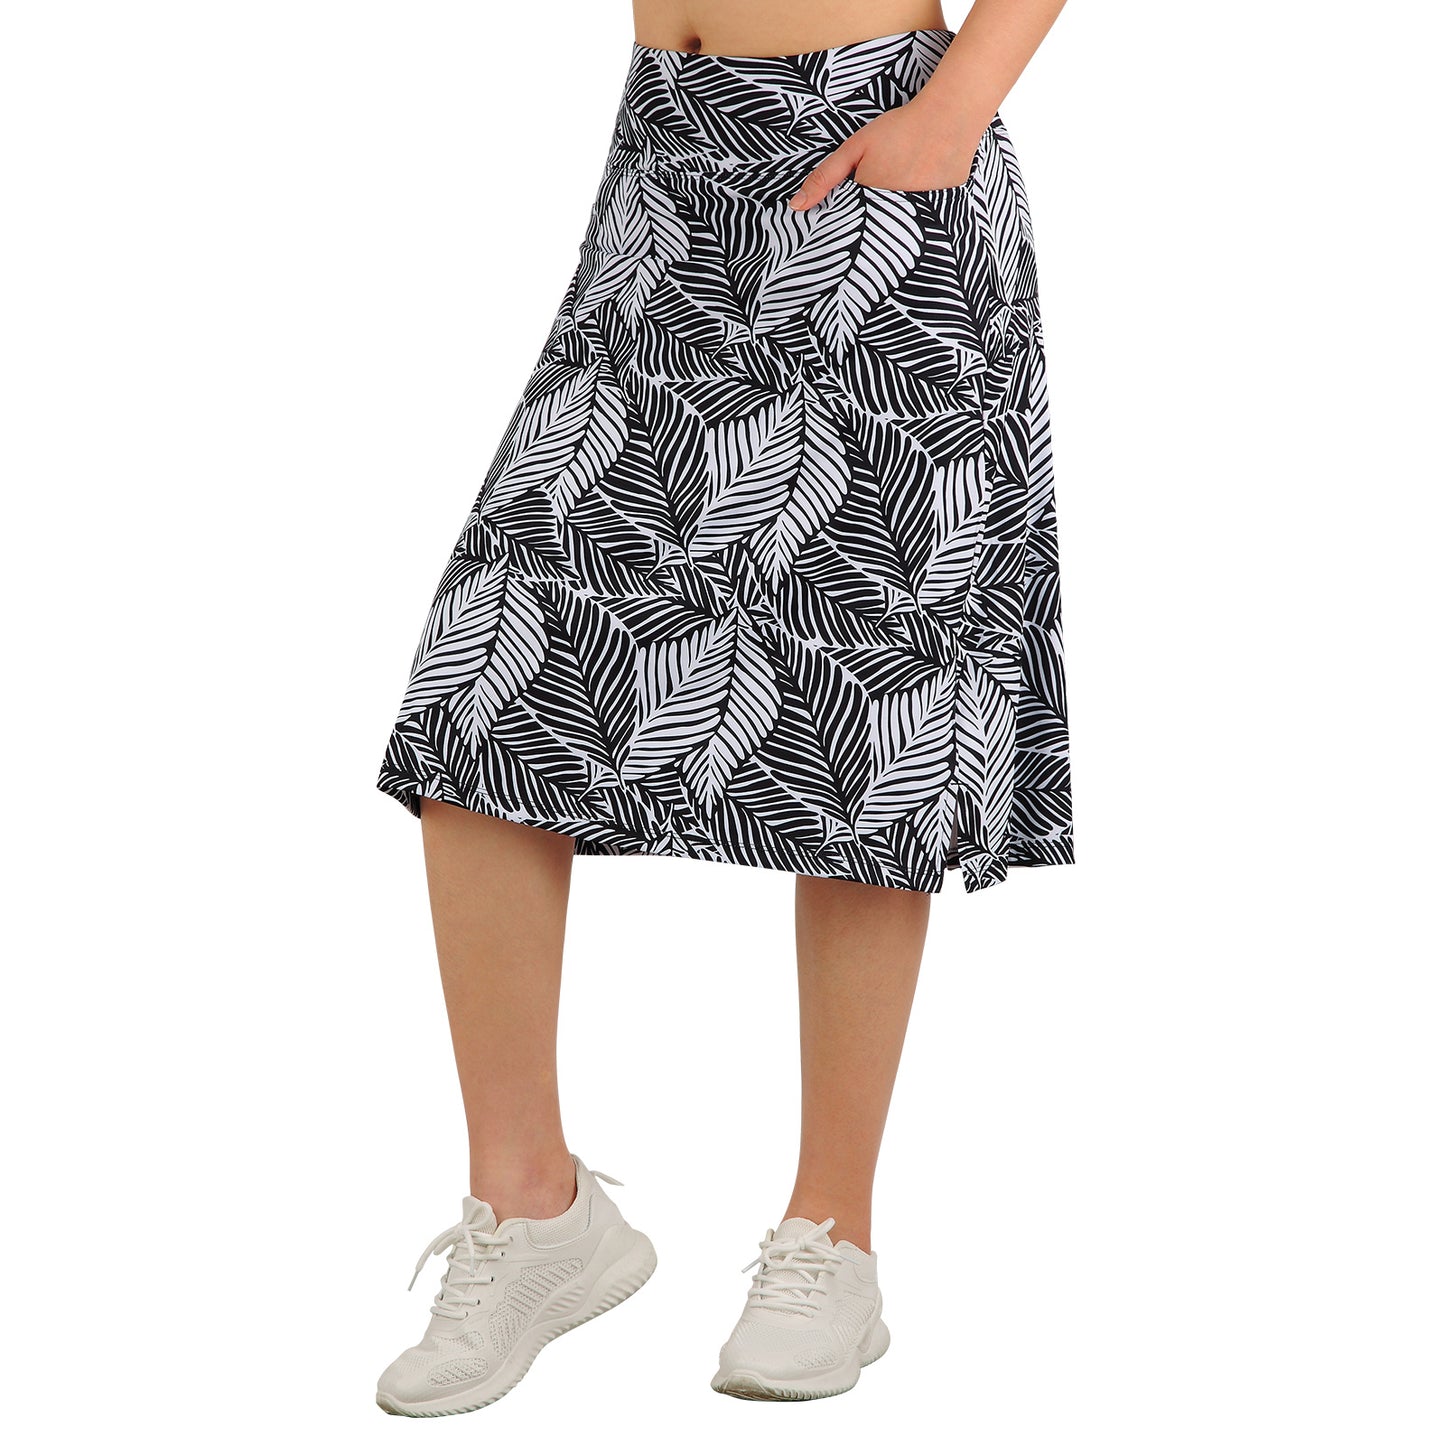 Anivivo Skirt Leggings Womens XL Pocket Modest Skort Activewear